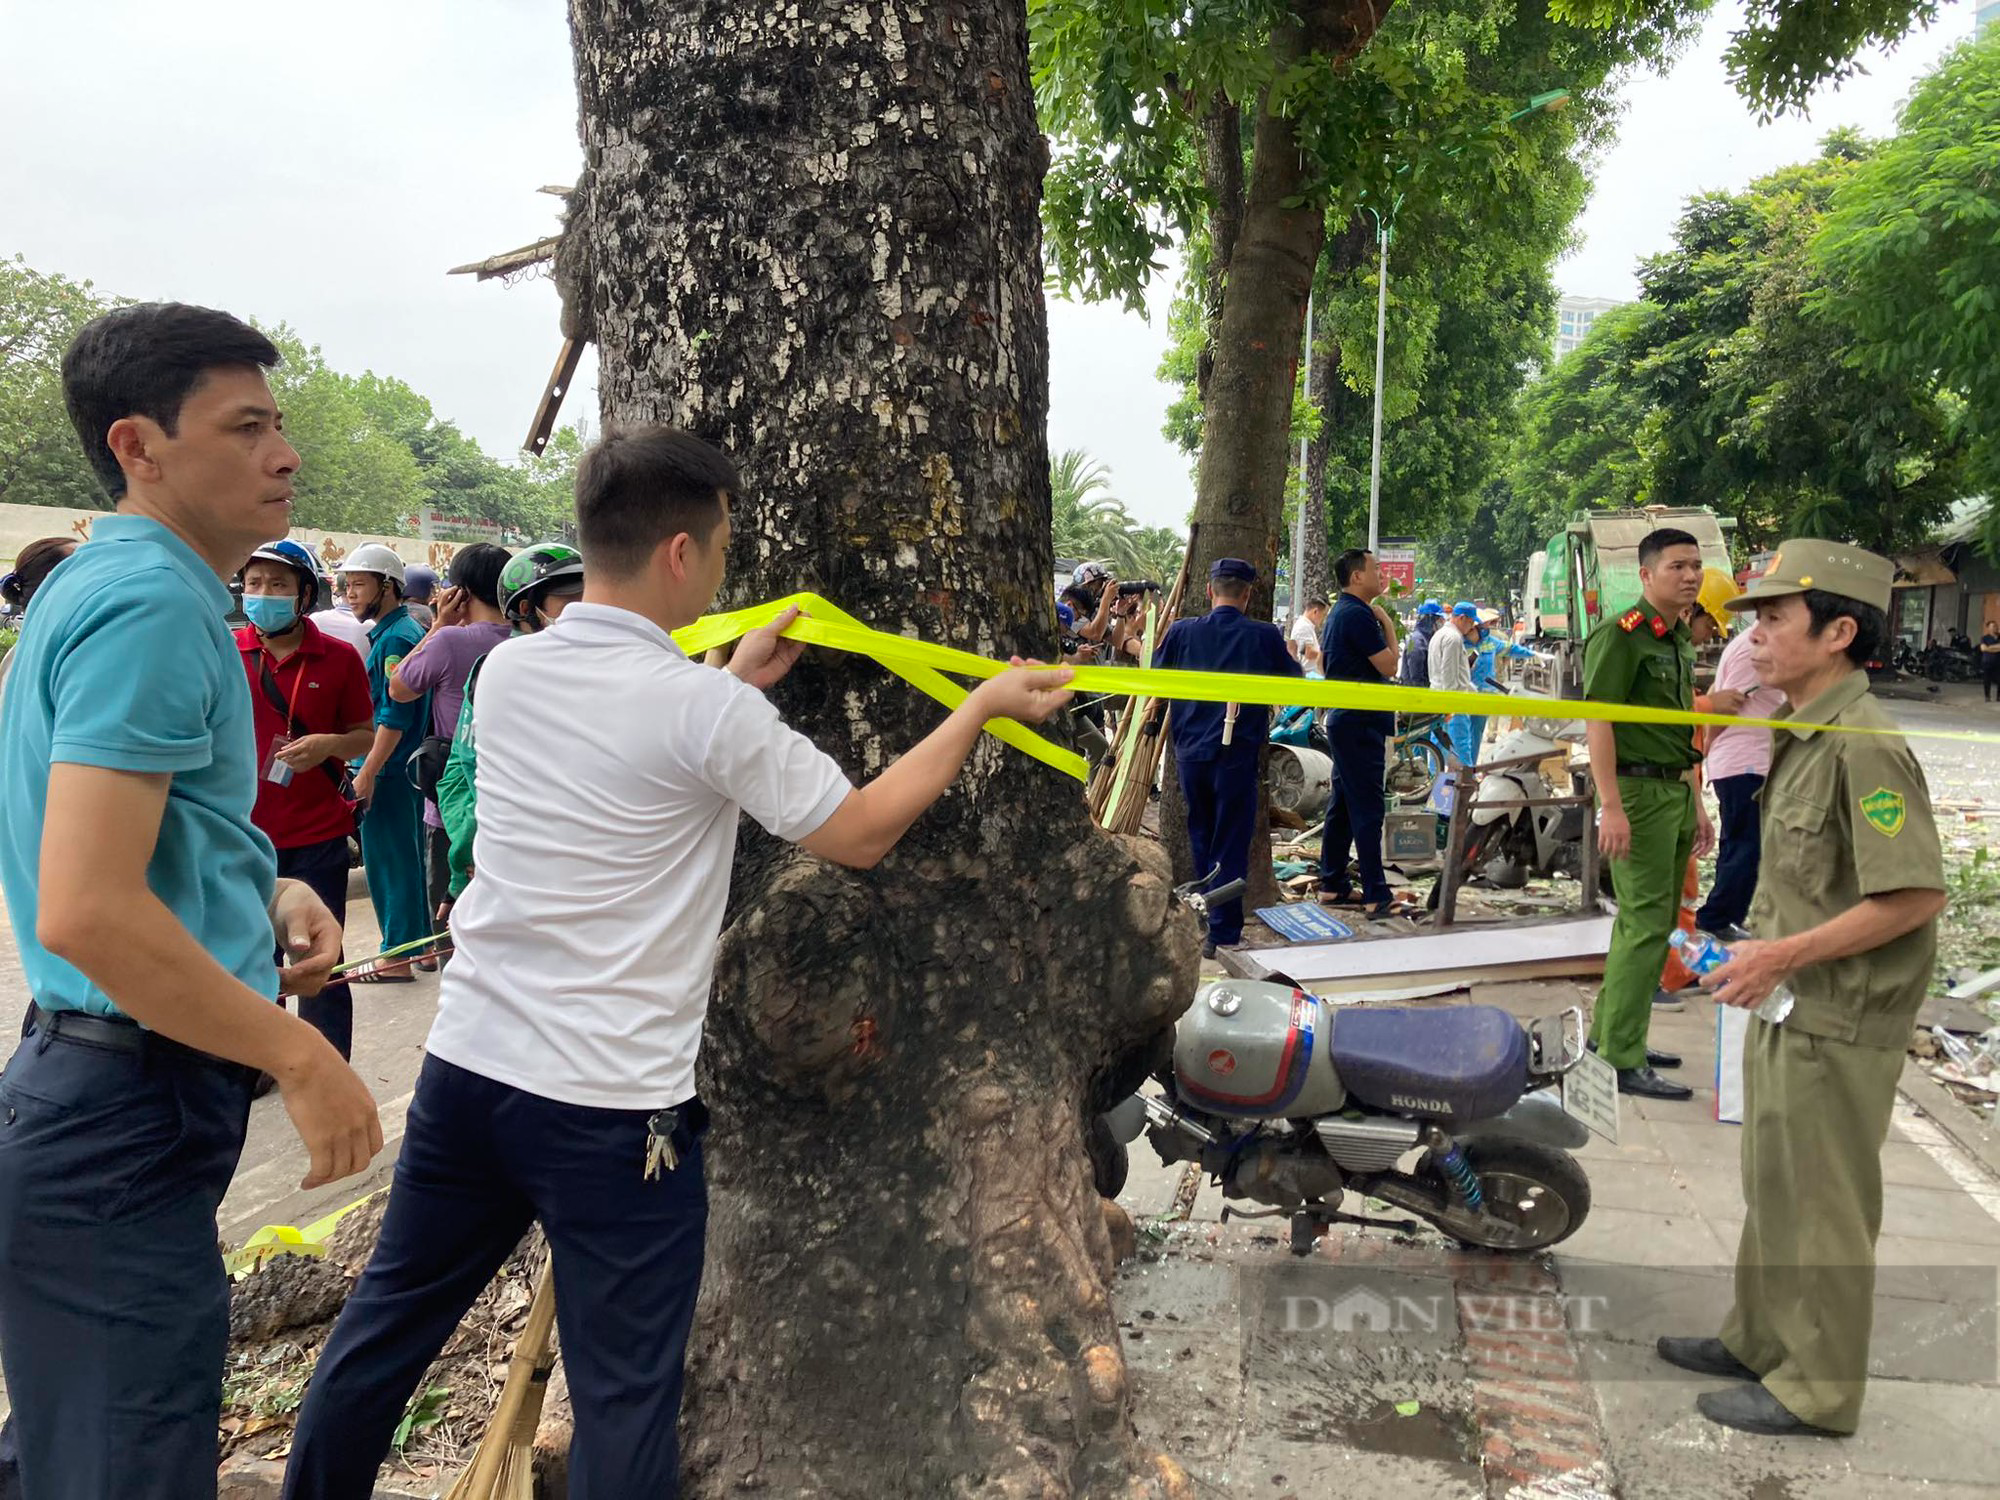 Hiện trường tan hoang sau nổ lớn cực lớn quán lẩu ở phố Yên Phụ, nhiều người bị thương nặng - Ảnh 13.